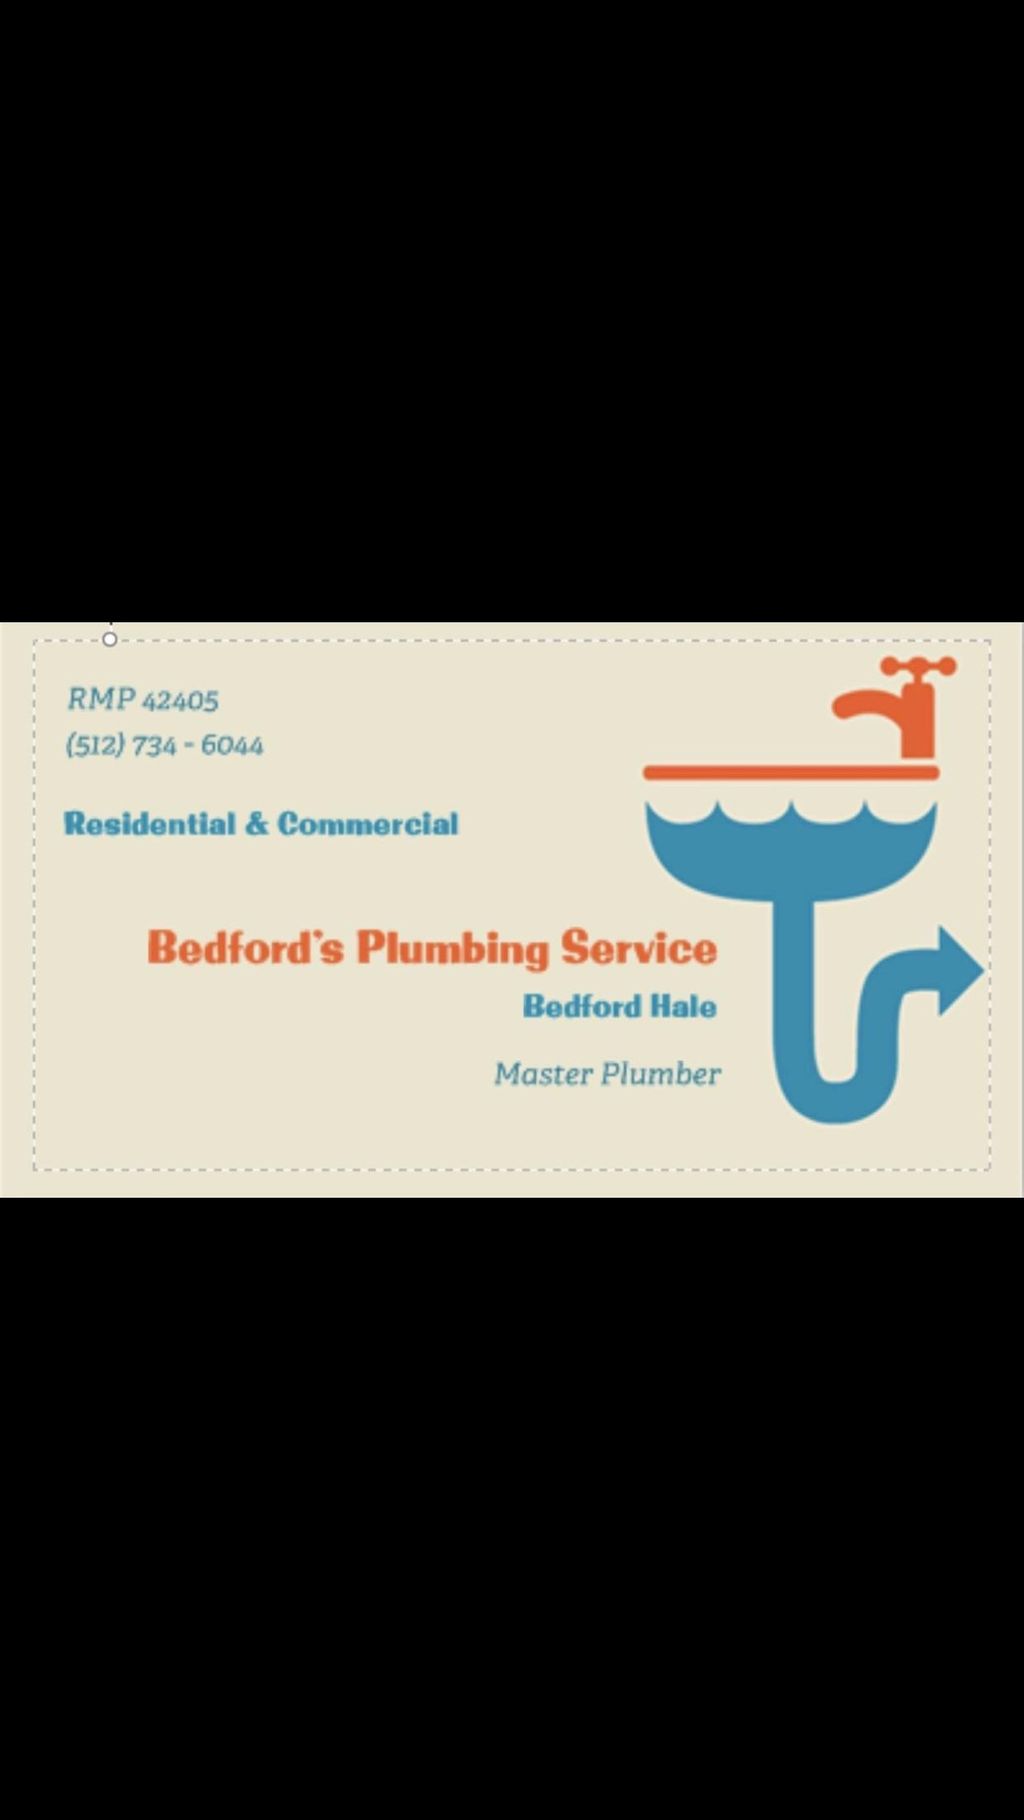 Bedford’s Plumbing Service